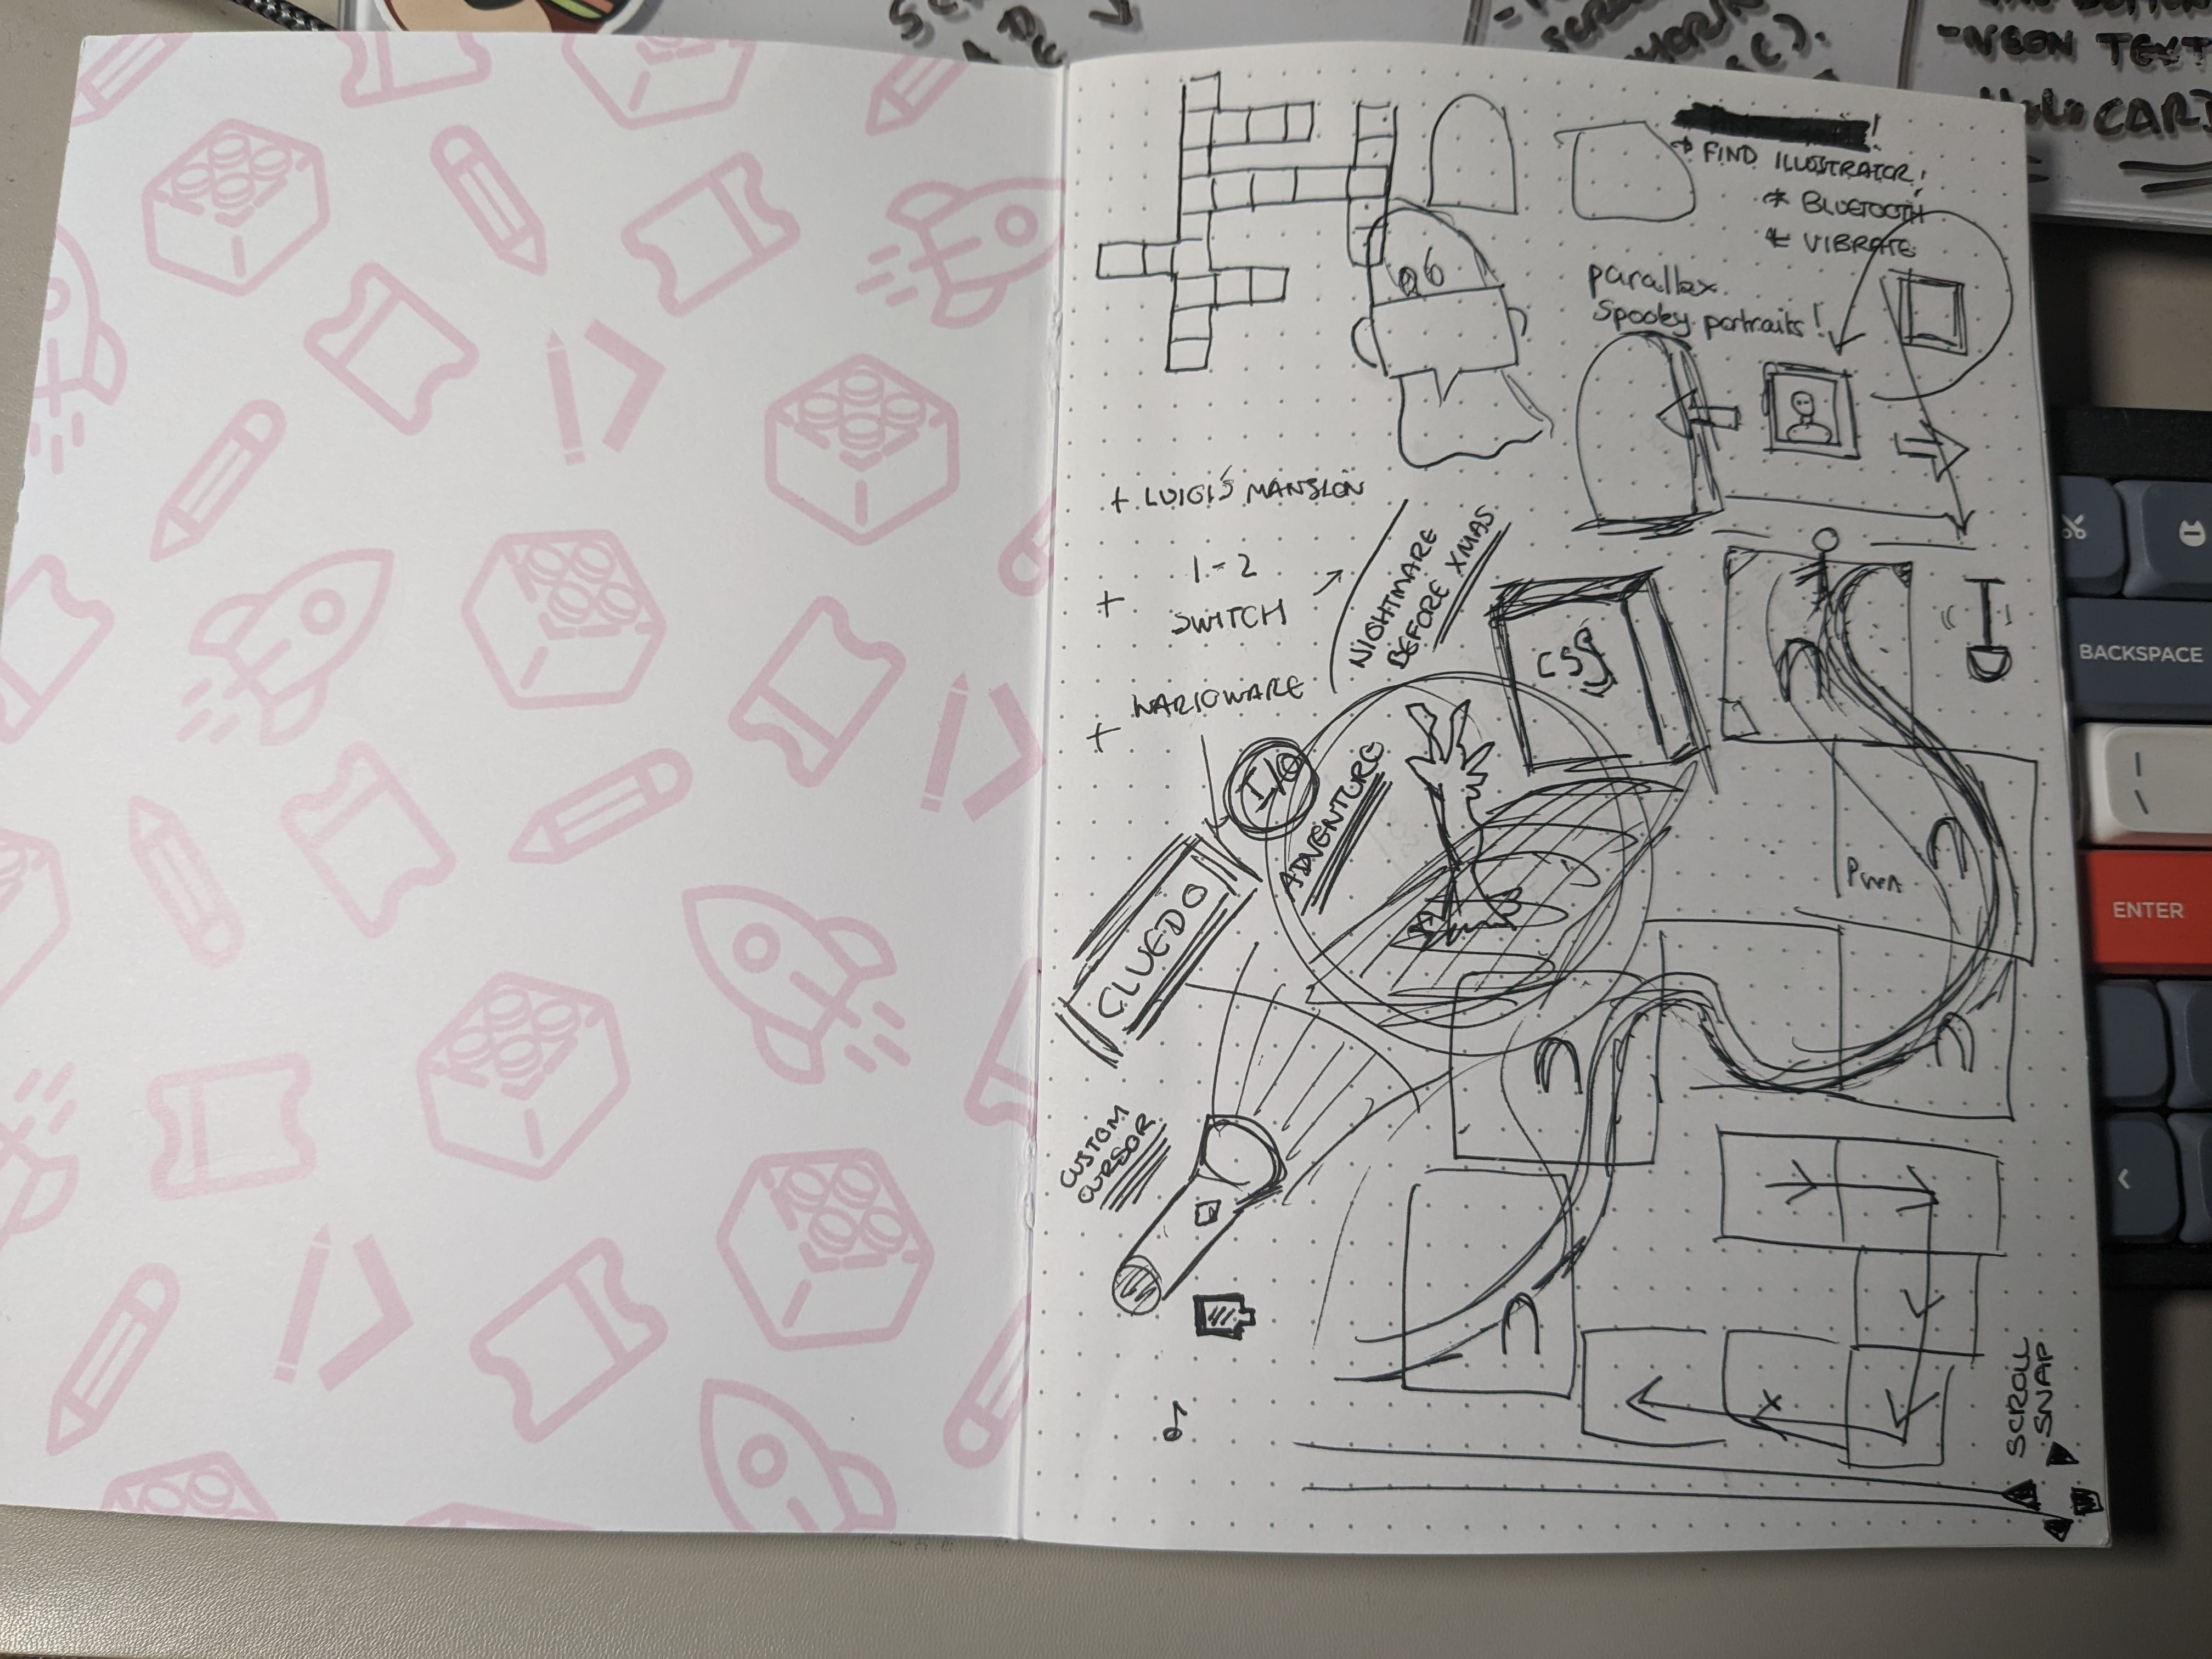 Na biurku leży notatnik z różnymi bazgrołami i rysunkami związanymi z projektem.